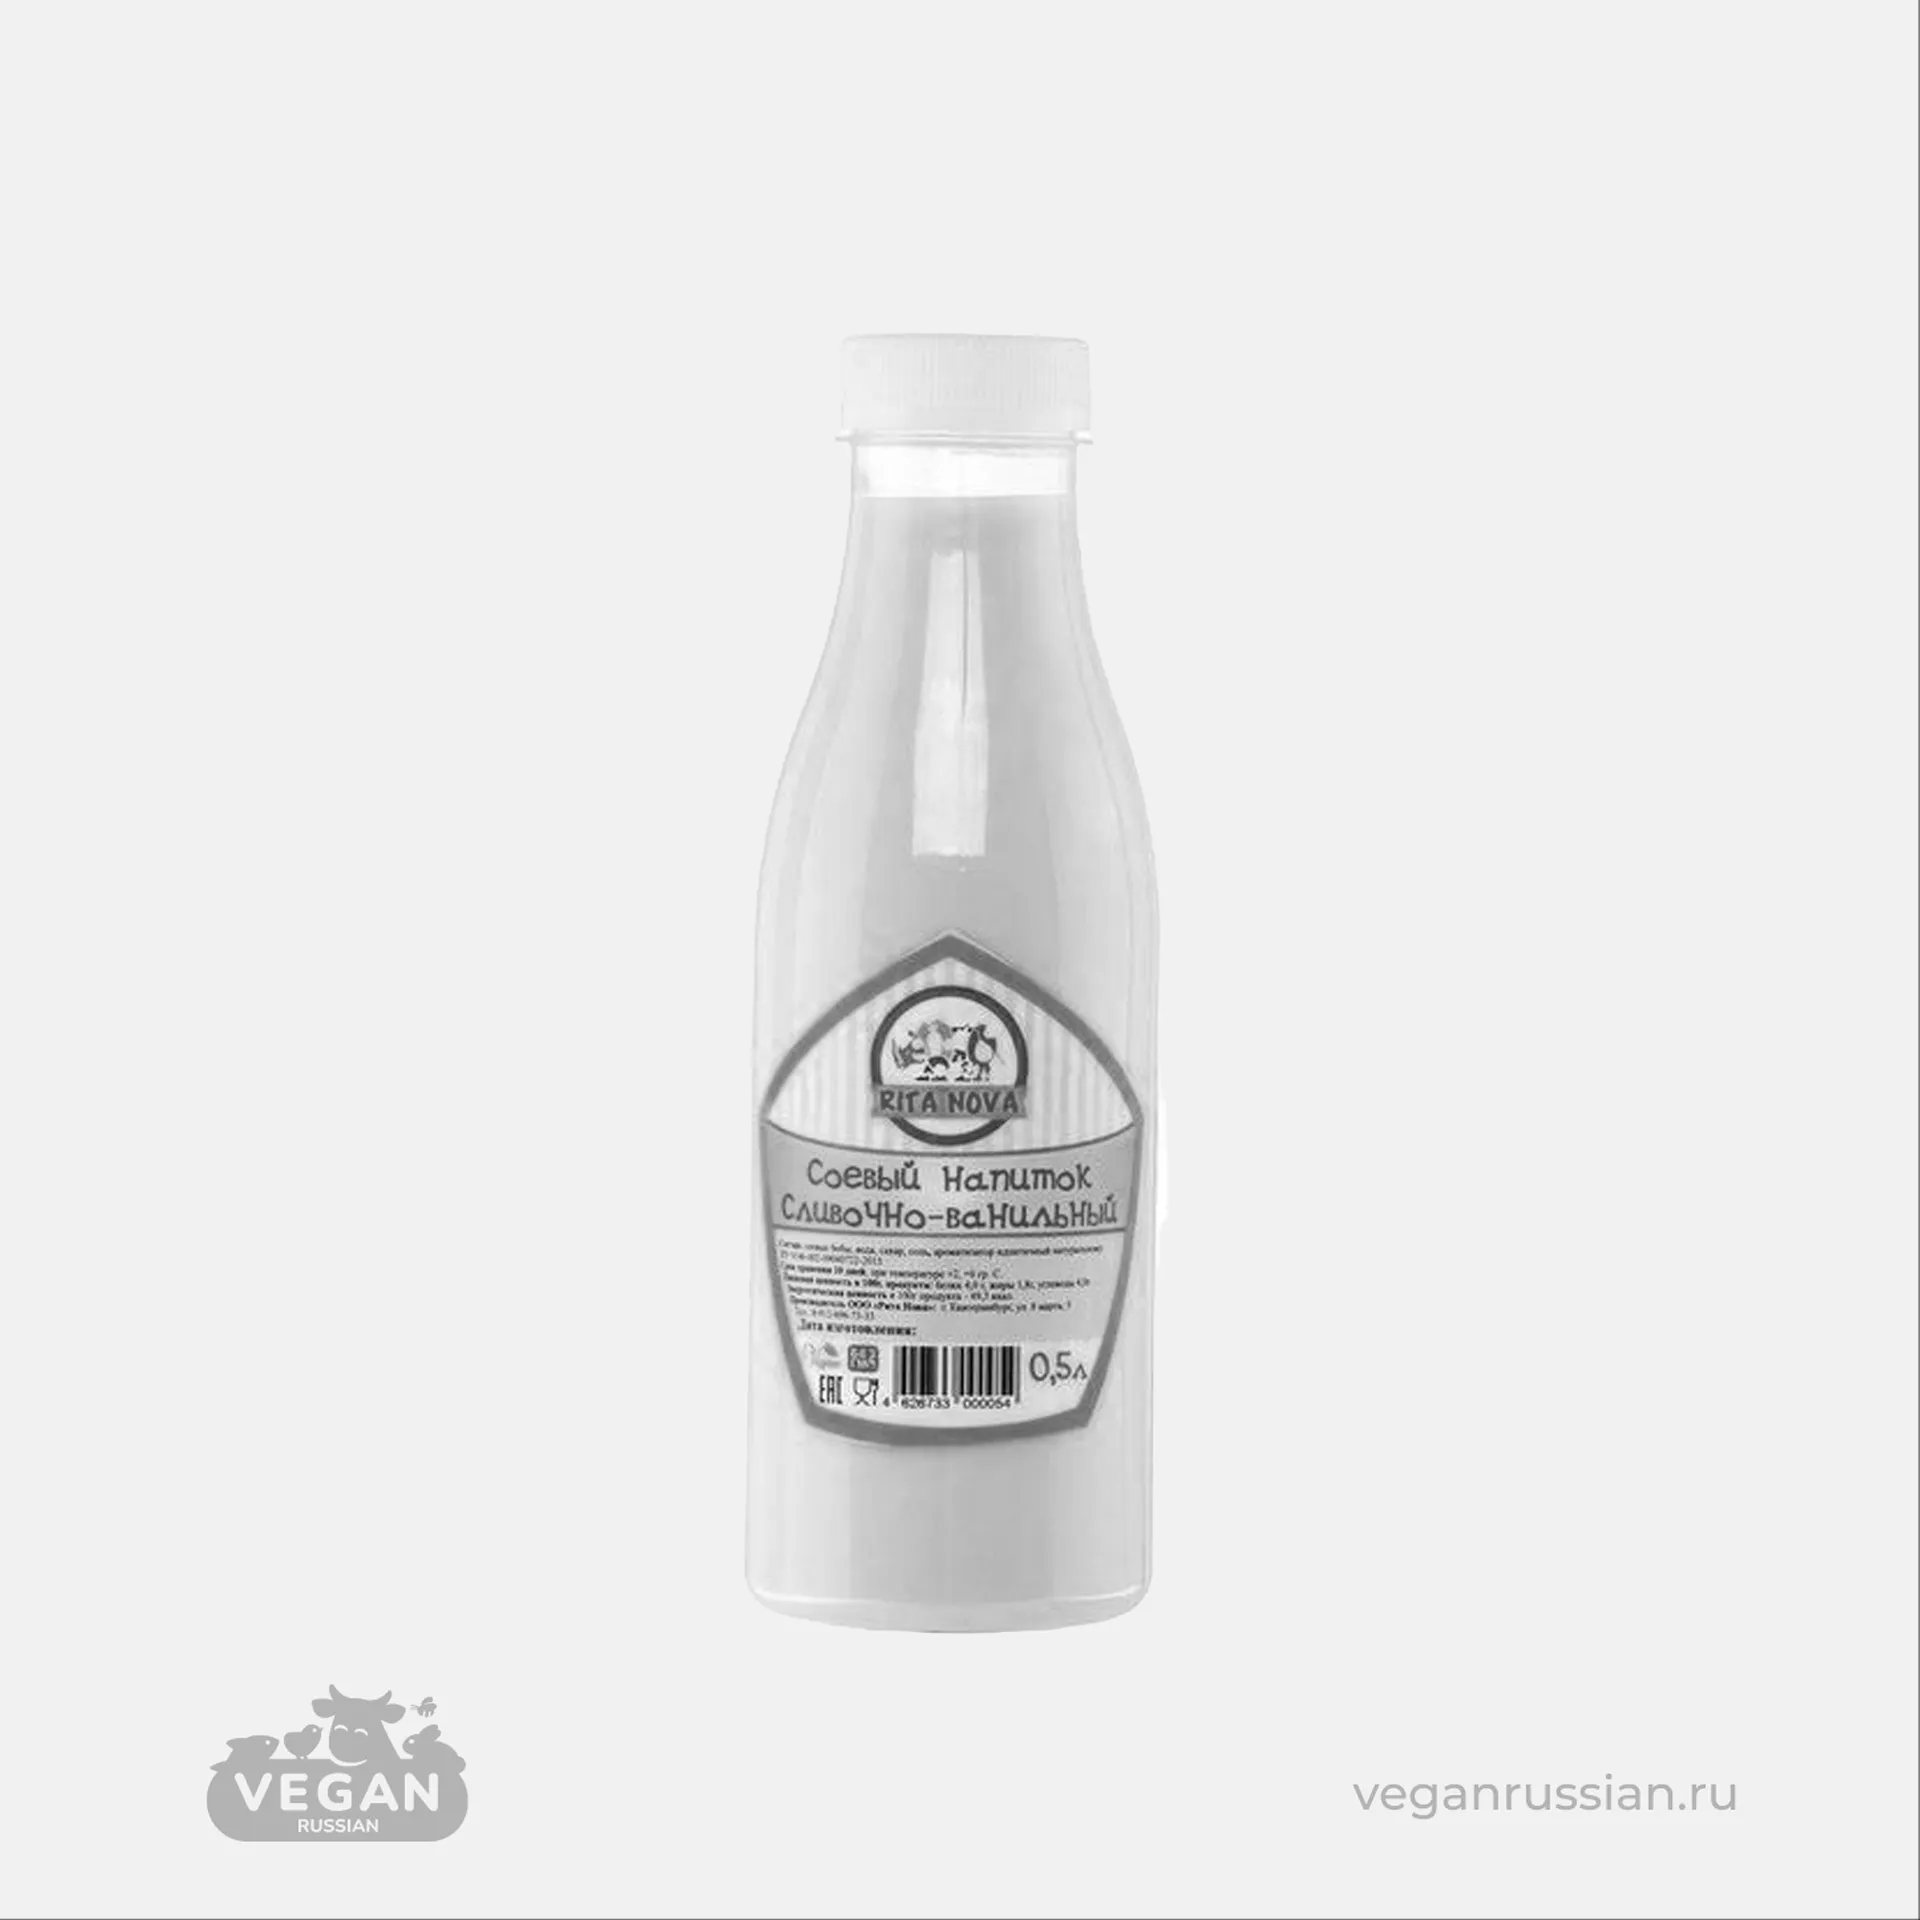 Архив: Соевое молоко сливочно-ванильное Вегетеринбург 500 мл